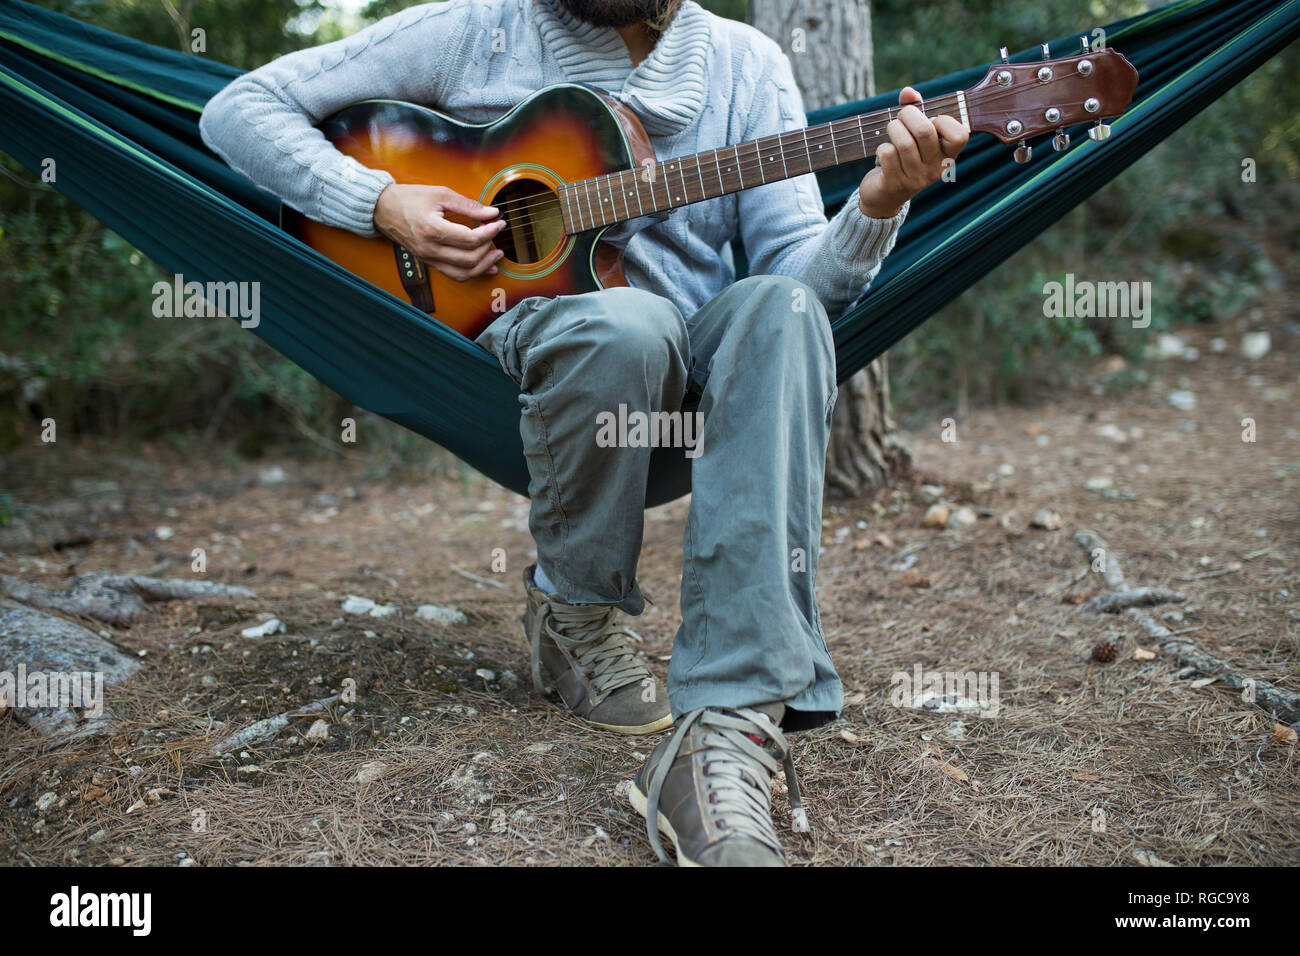 Uomo seduto in amaca a suonare la chitarra nei boschi, vista parziale Foto Stock